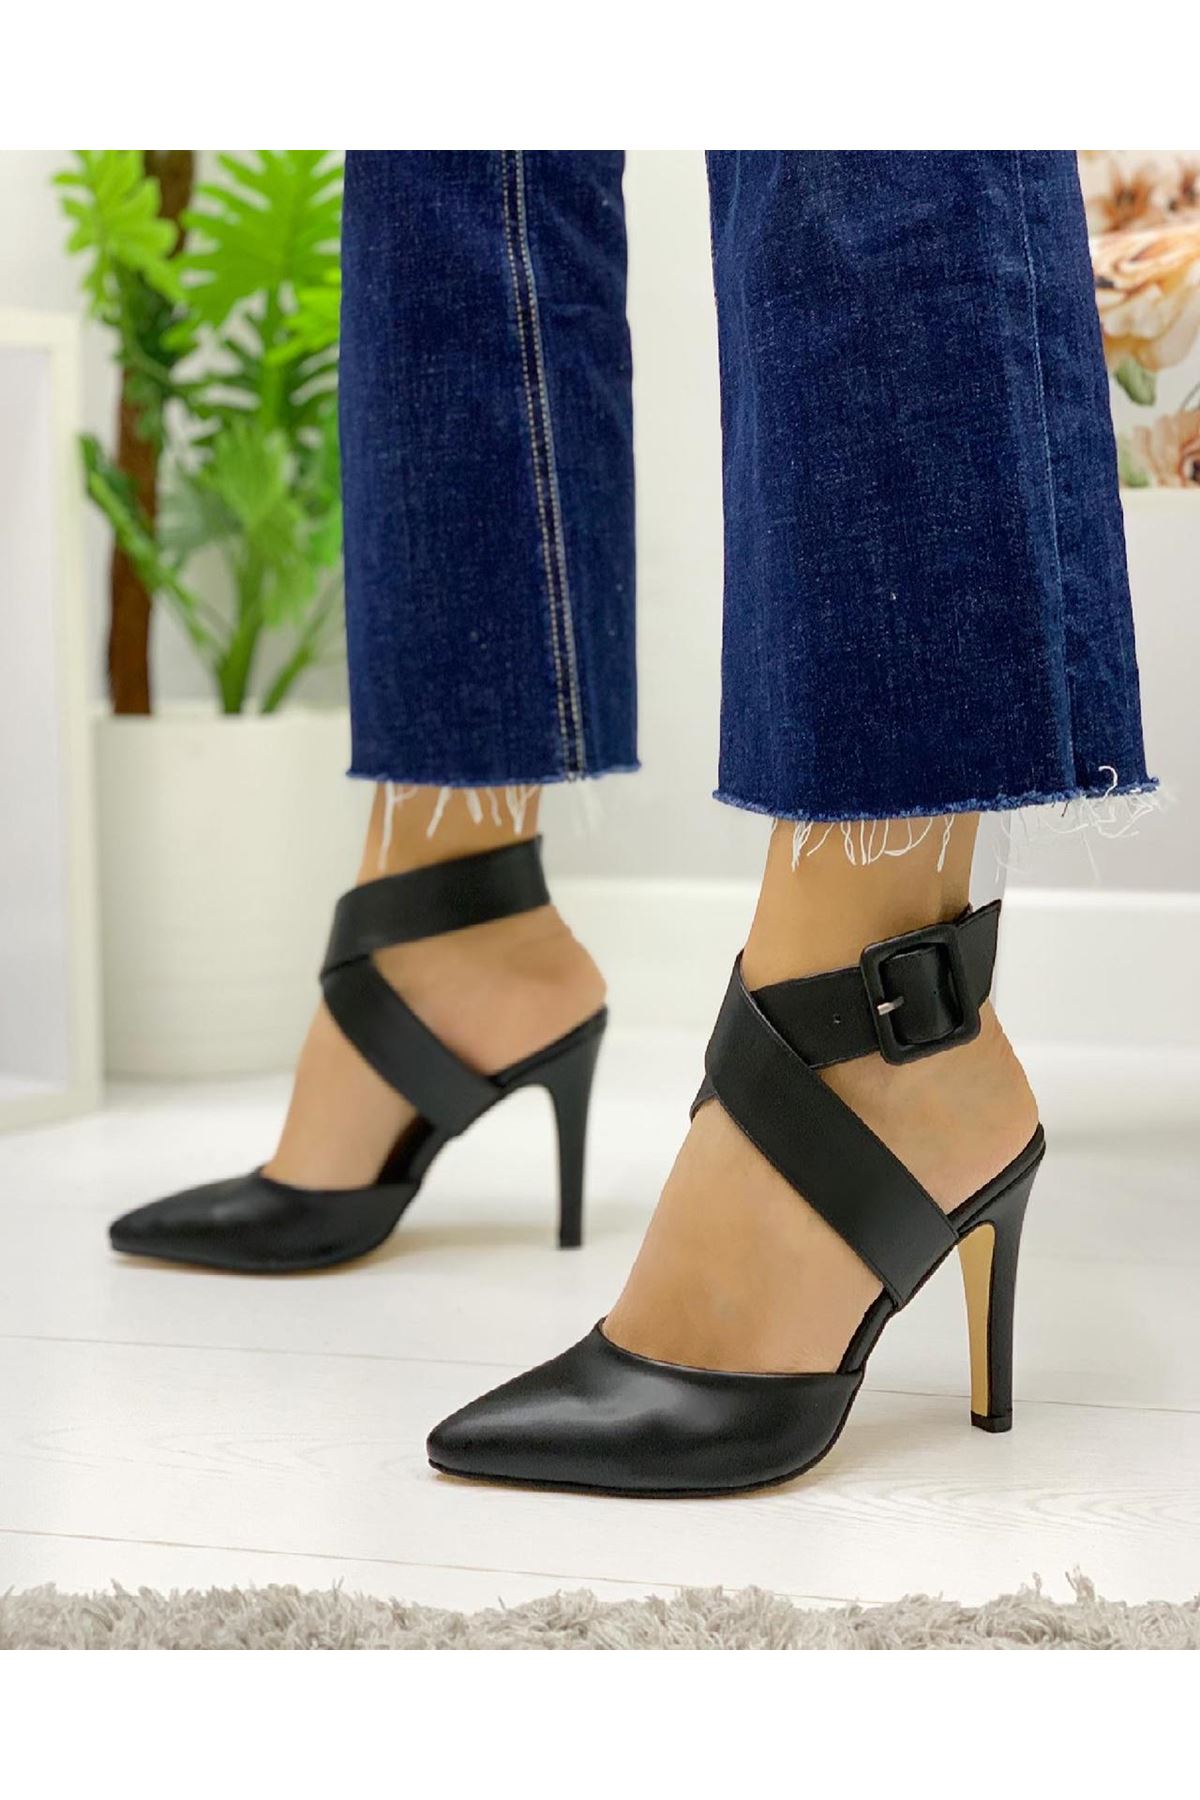 Chanel Siyah  Bayan Topuklu Ayakkabı